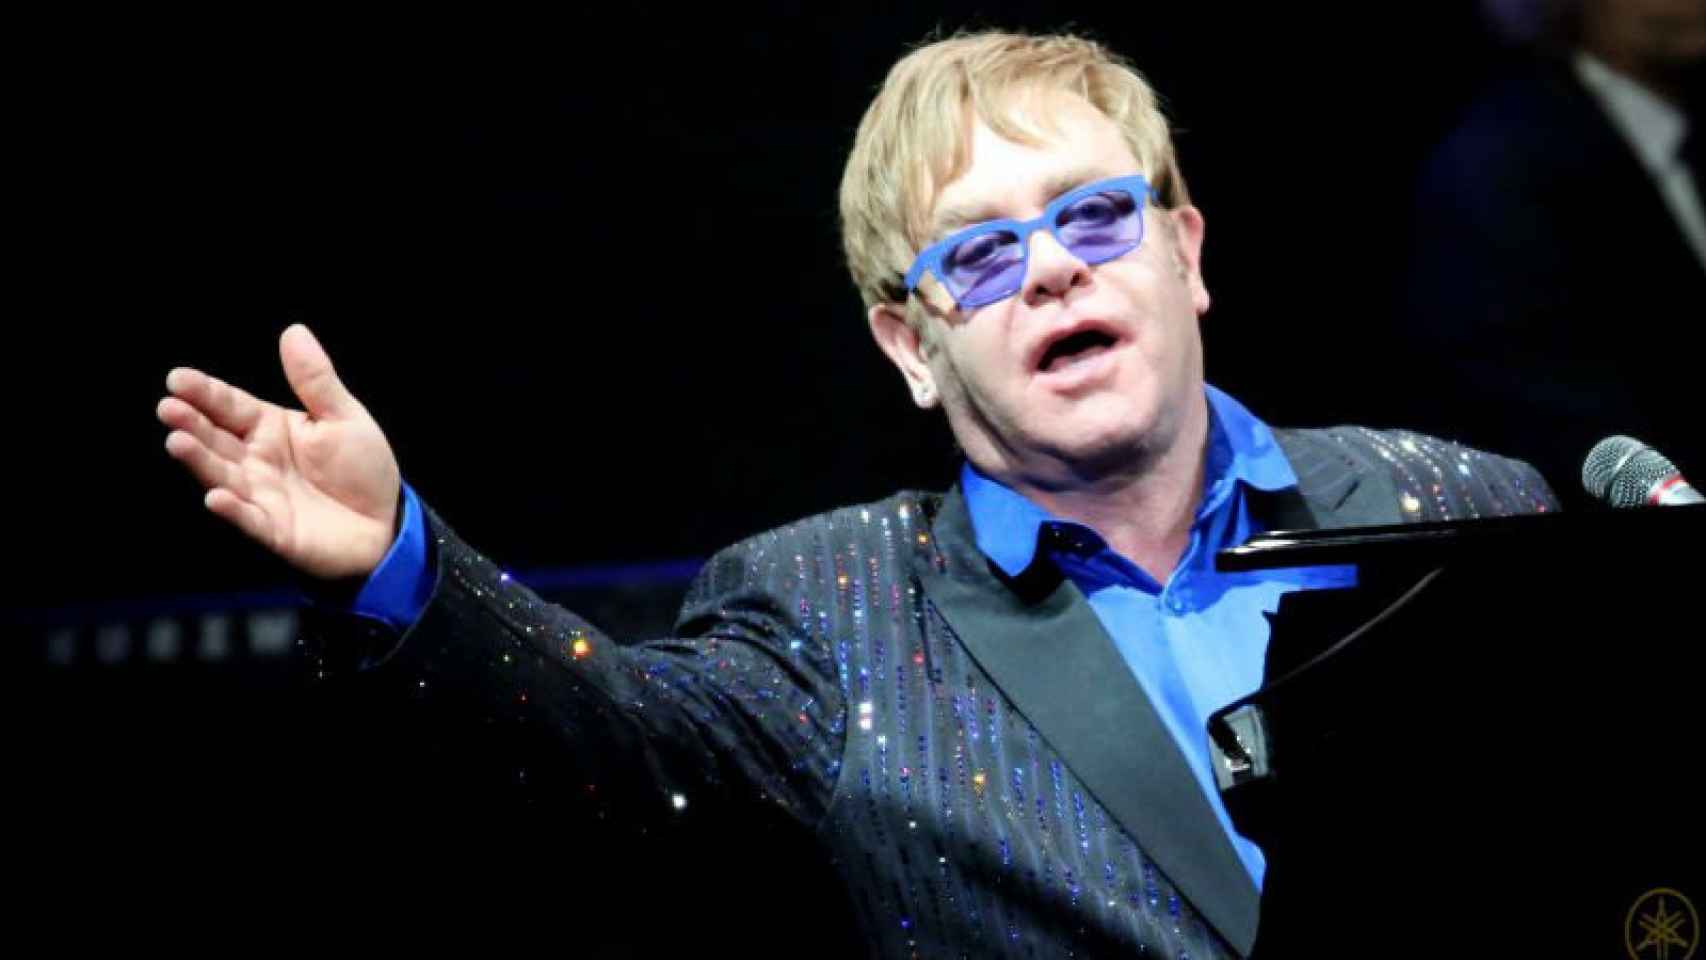 El músico Elton John tocando el piano durante uno de sus conciertos.